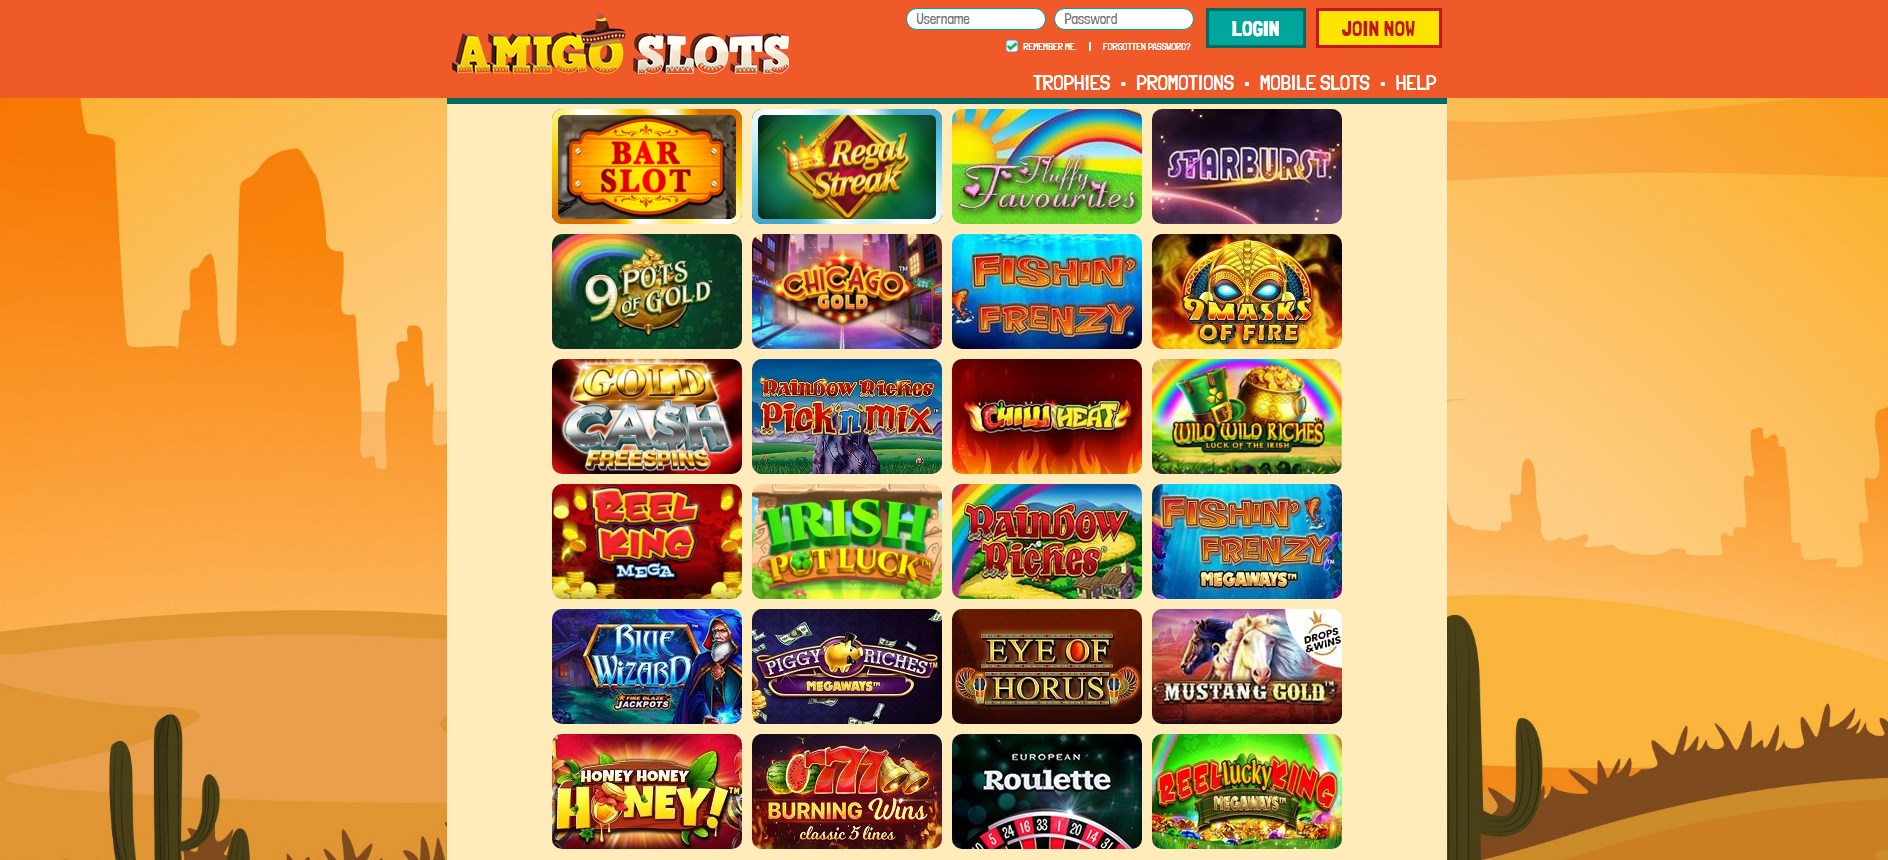 Amigo Slots Casino Games